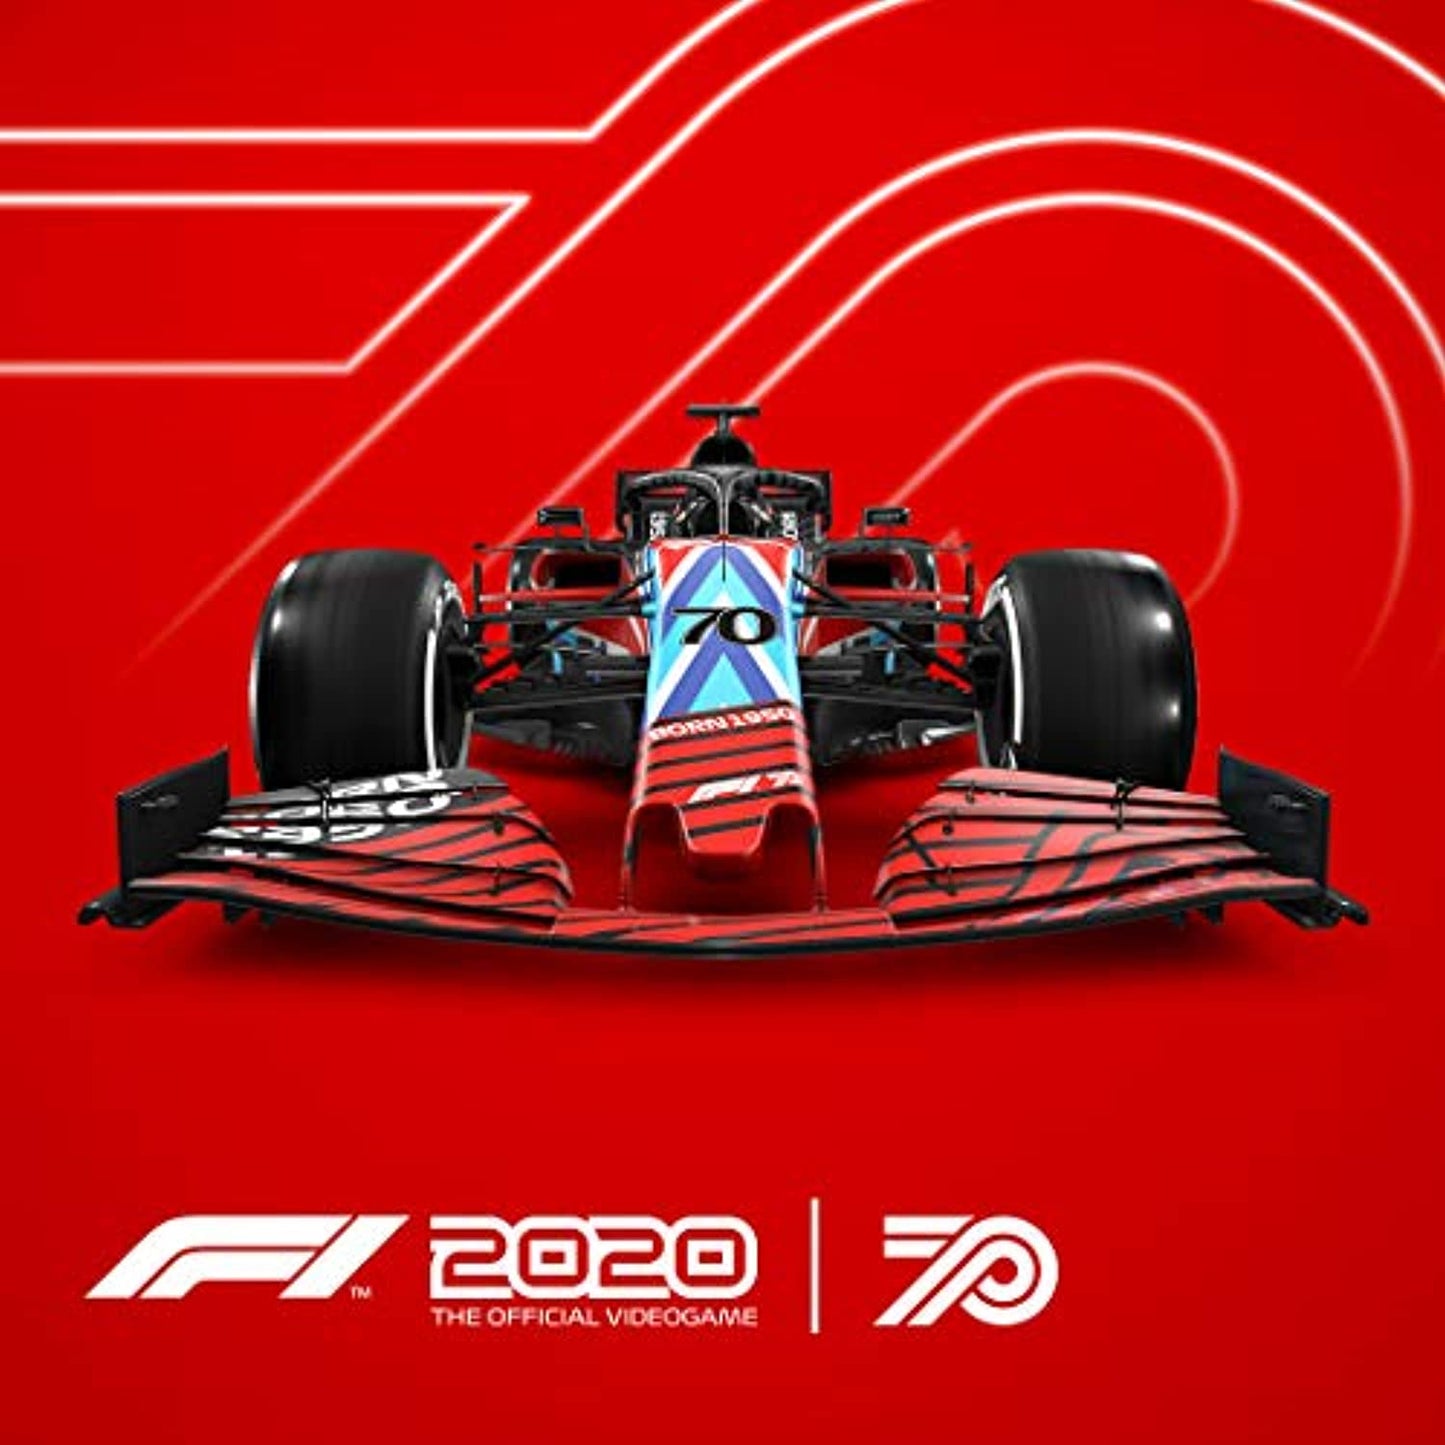 F1 2020 (PS4)